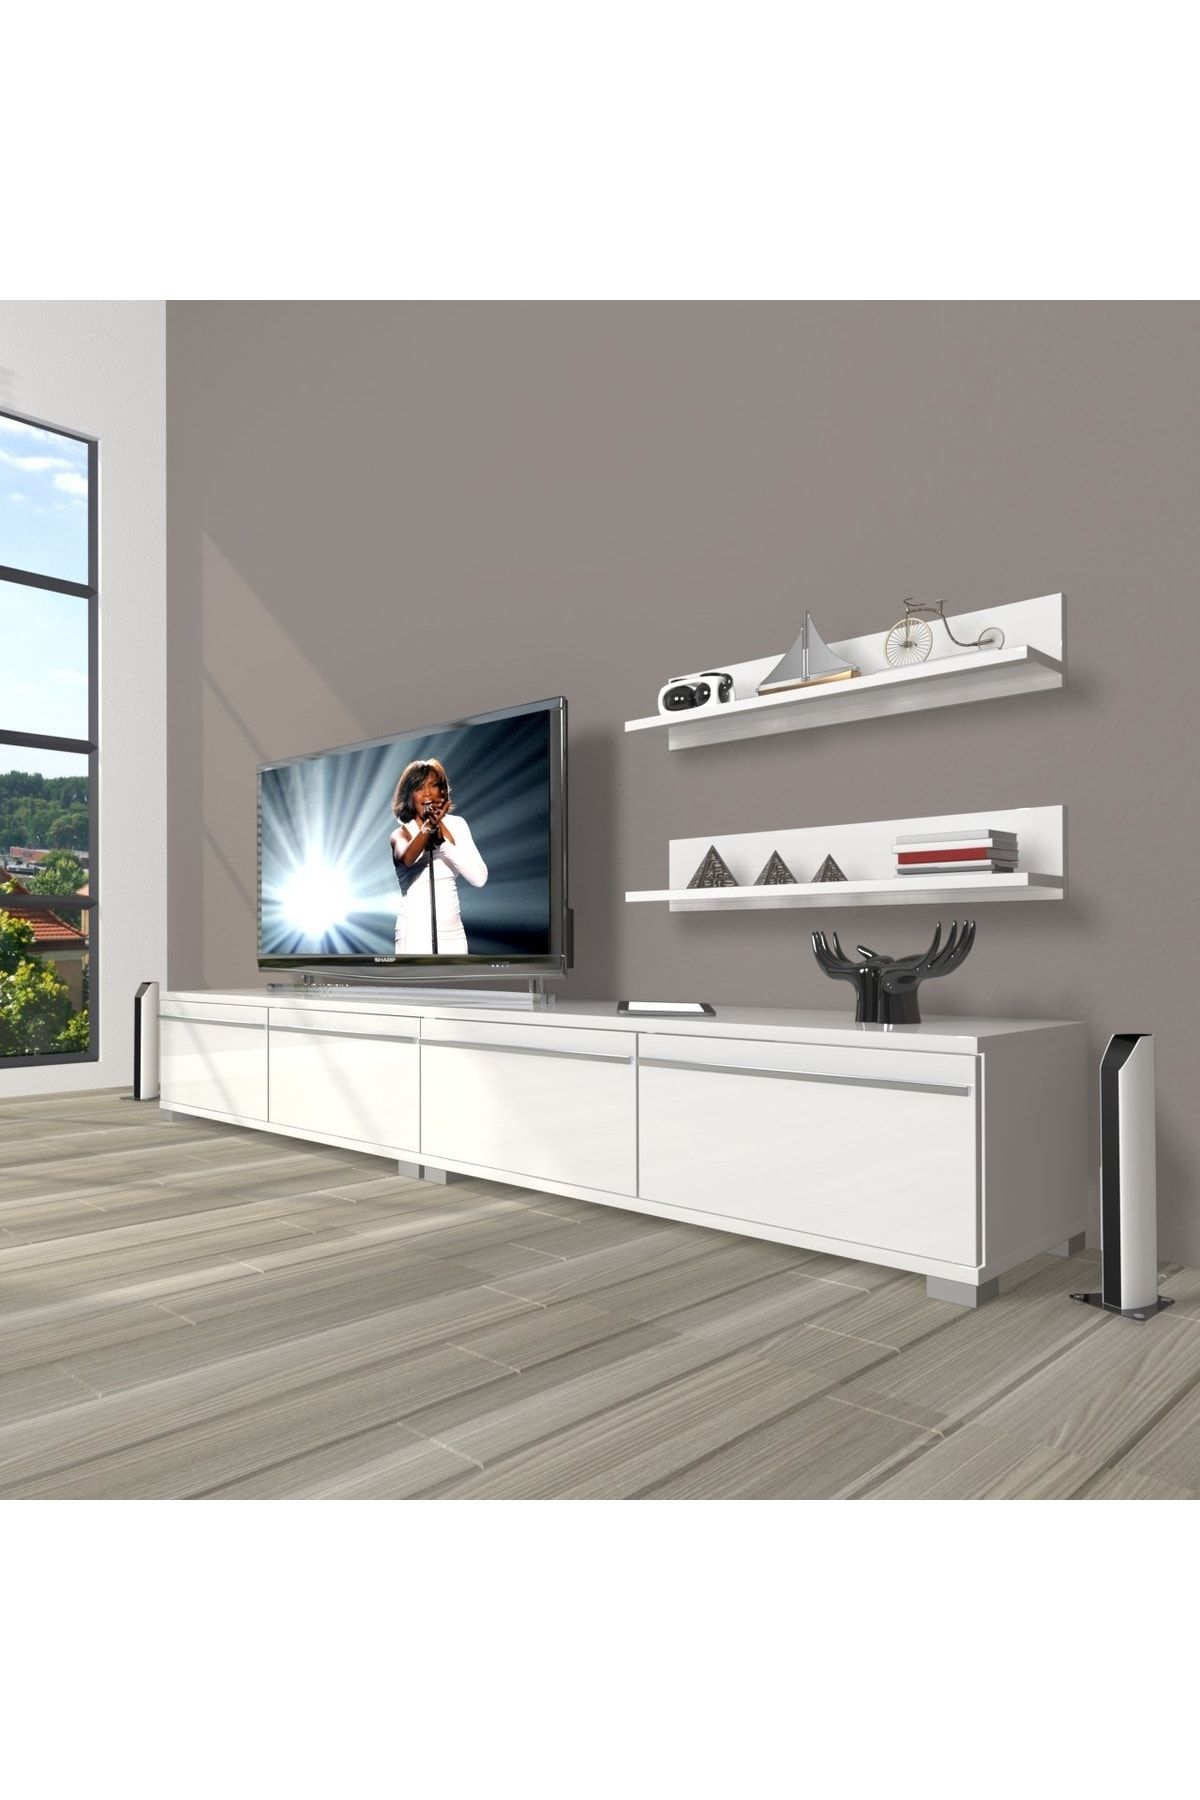 Decoraktiv Eko 220t Mdf Tv Ünitesi Tv Sehpası - Parlak Beyaz